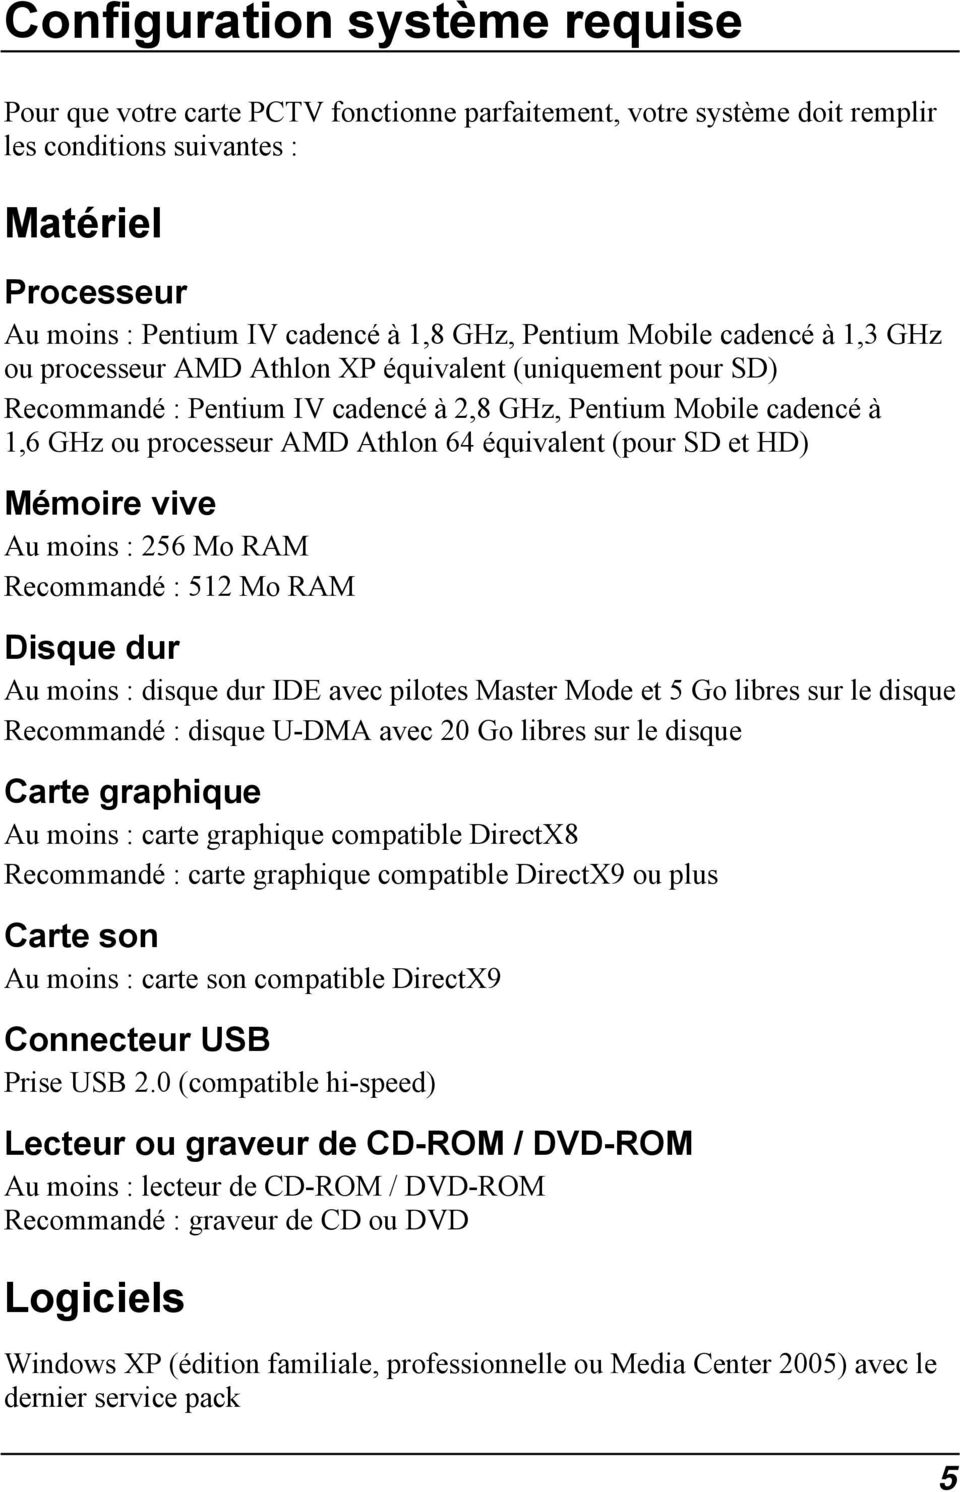 équivalent (pour SD et HD) Mémoire vive Au moins : 256 Mo RAM Recommandé : 512 Mo RAM Disque dur Au moins : disque dur IDE avec pilotes Master Mode et 5 Go libres sur le disque Recommandé : disque